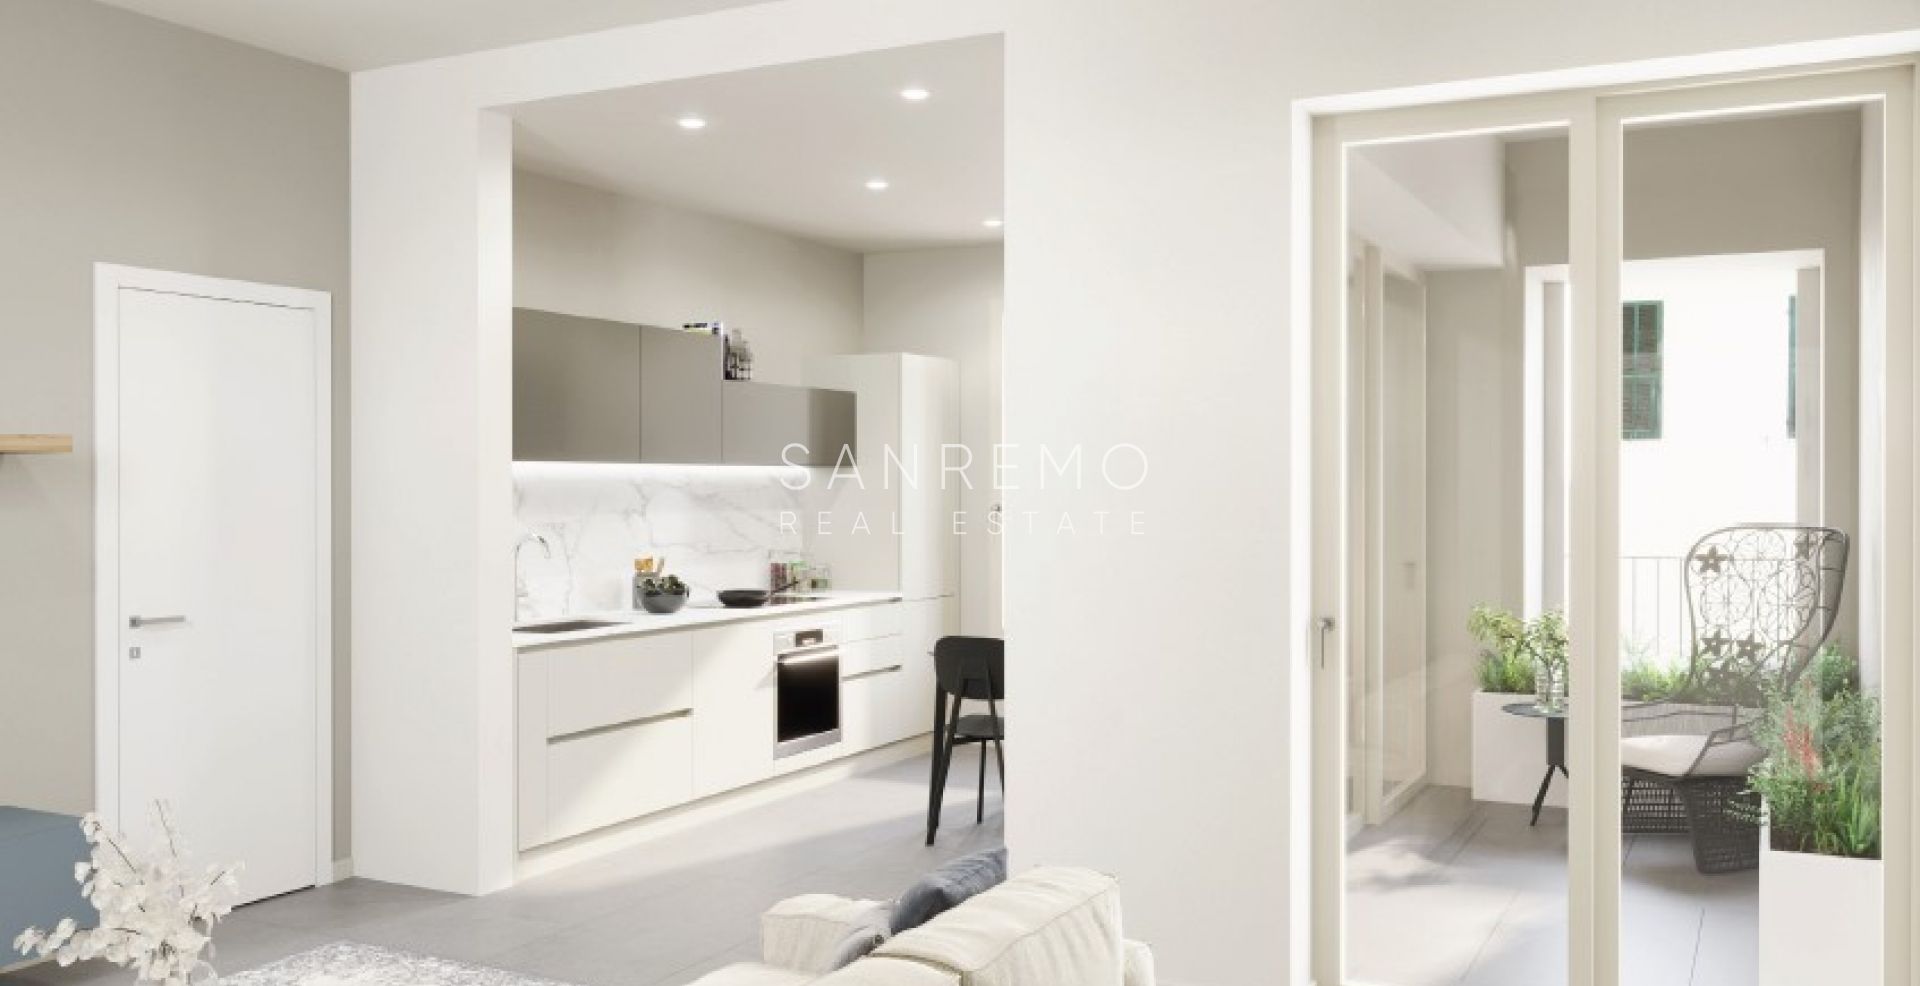 12 new apartments for sale in Bussana di Sanremo